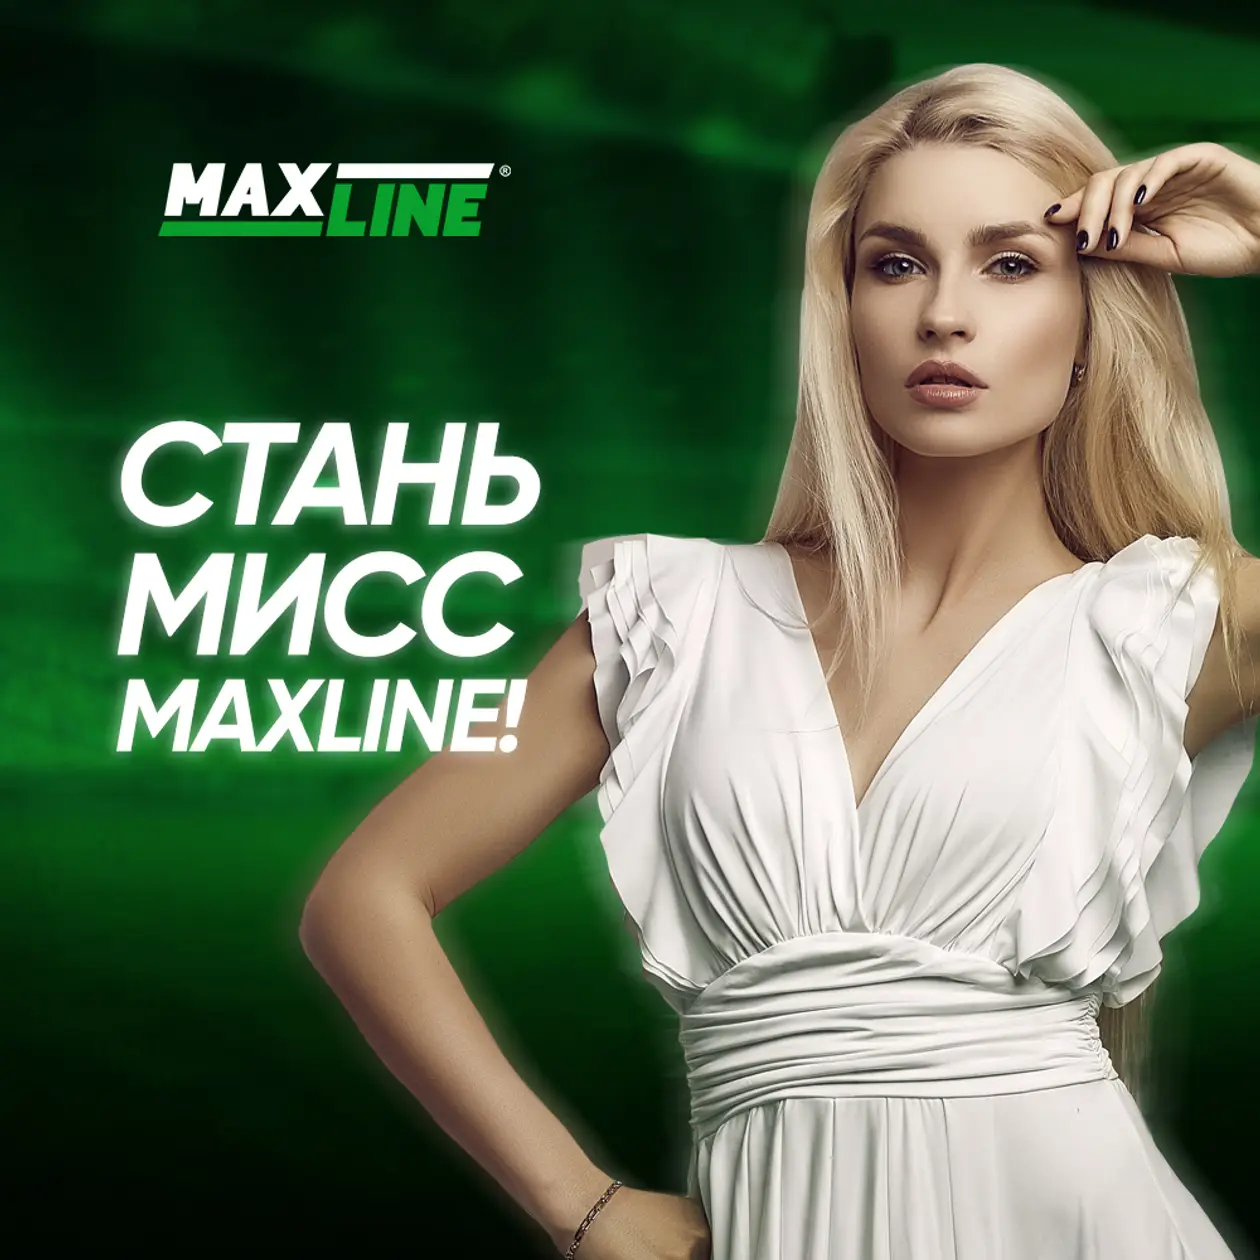 Букмекерская компания запускает конкурс «Мисс Maxline». Главное – индивидуальность и шарм